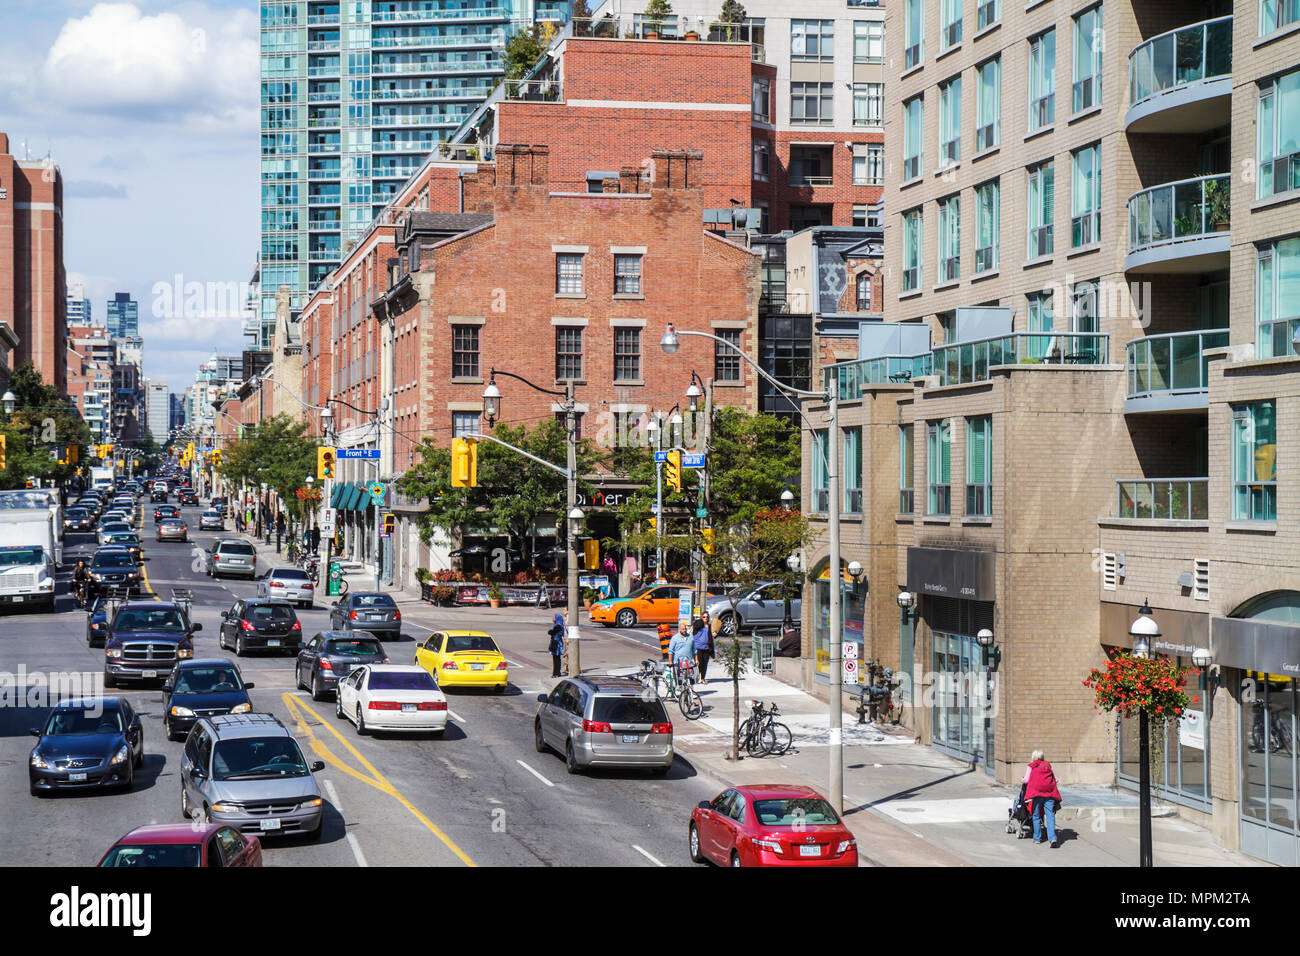 Toronto Canada,Lower Jarvis Street,Front Street East,scène de rue,immeuble résidentiel,circulation,voiture,rue,trottoir,lampe,gratte-ciel gratte-ciel Banque D'Images